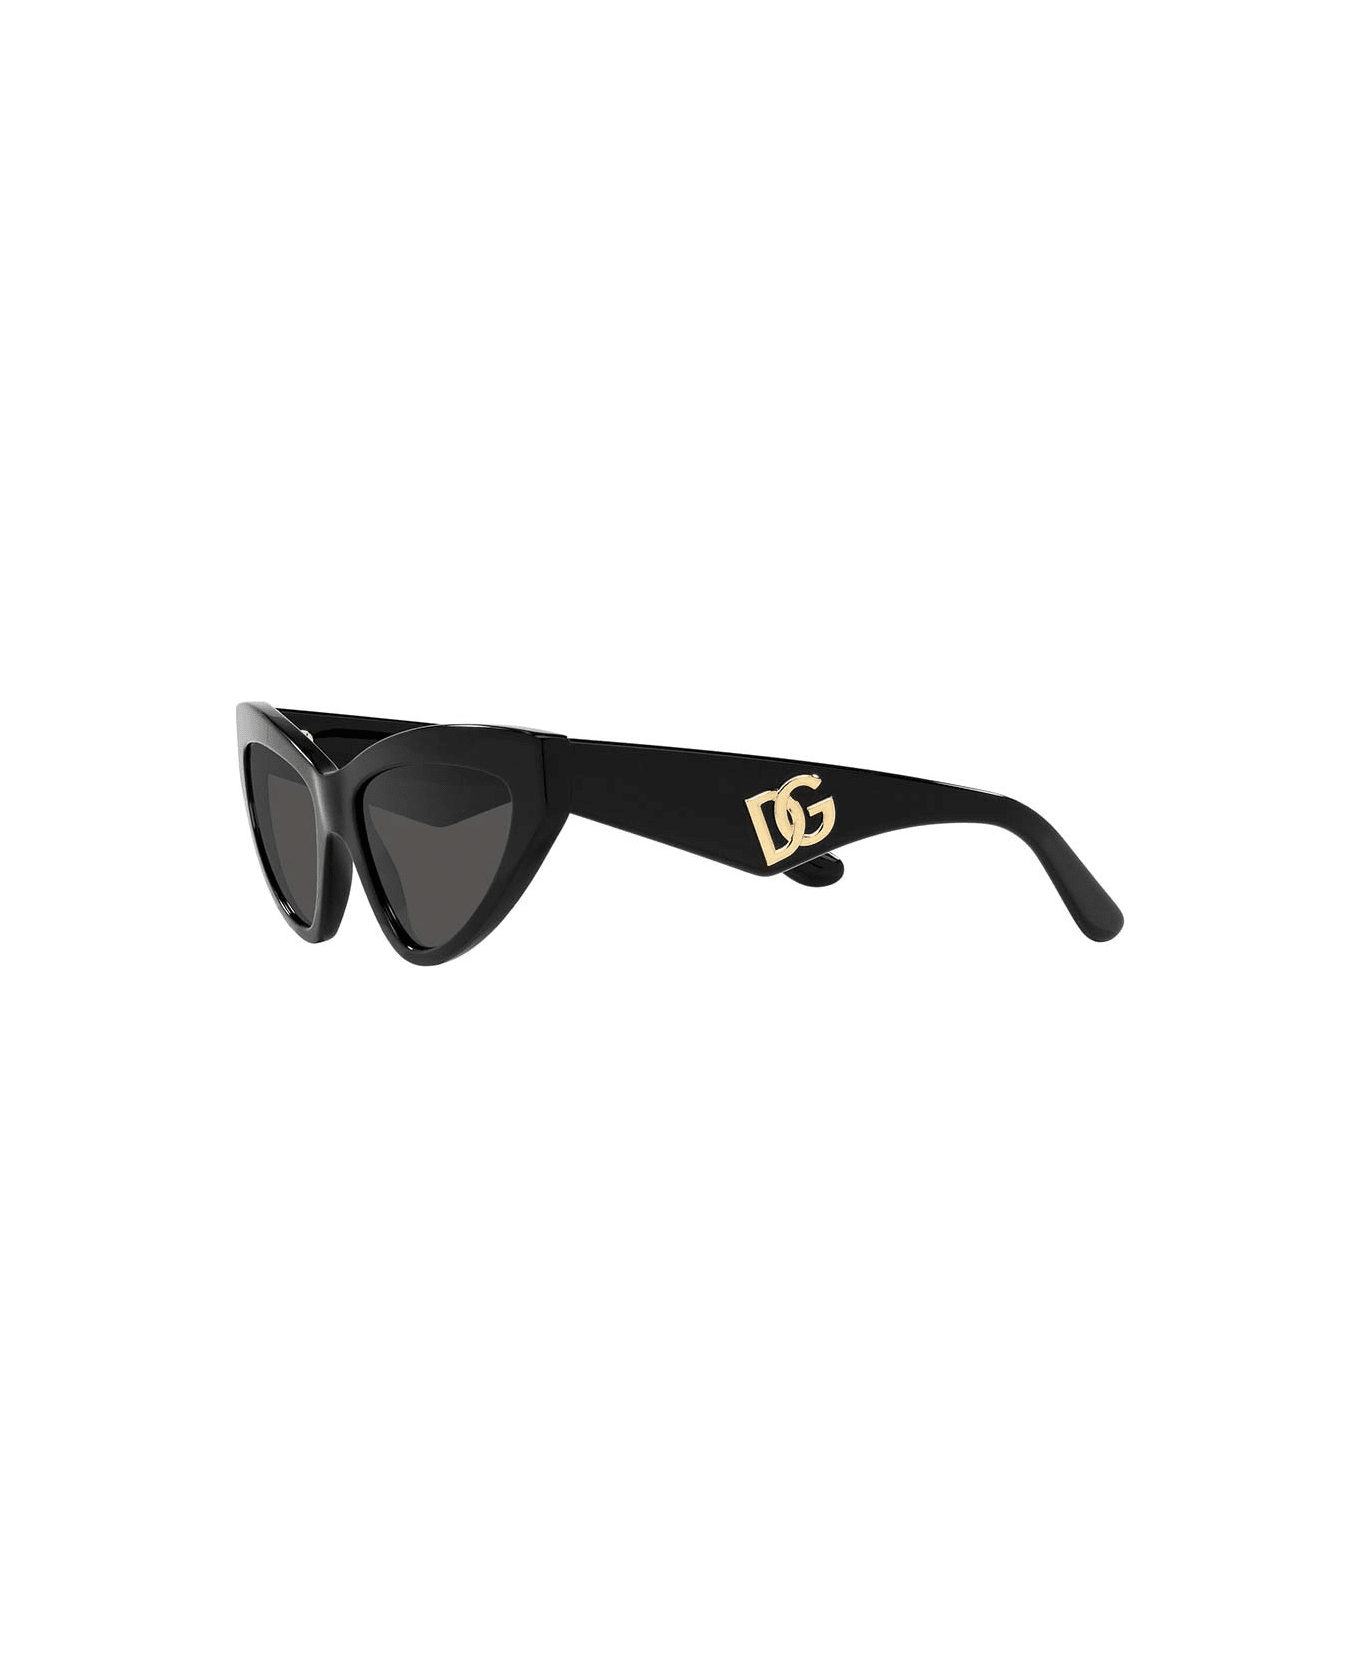 Ve4409 Red Sunglasses Eyewear Sunglasses - Nero/Nero